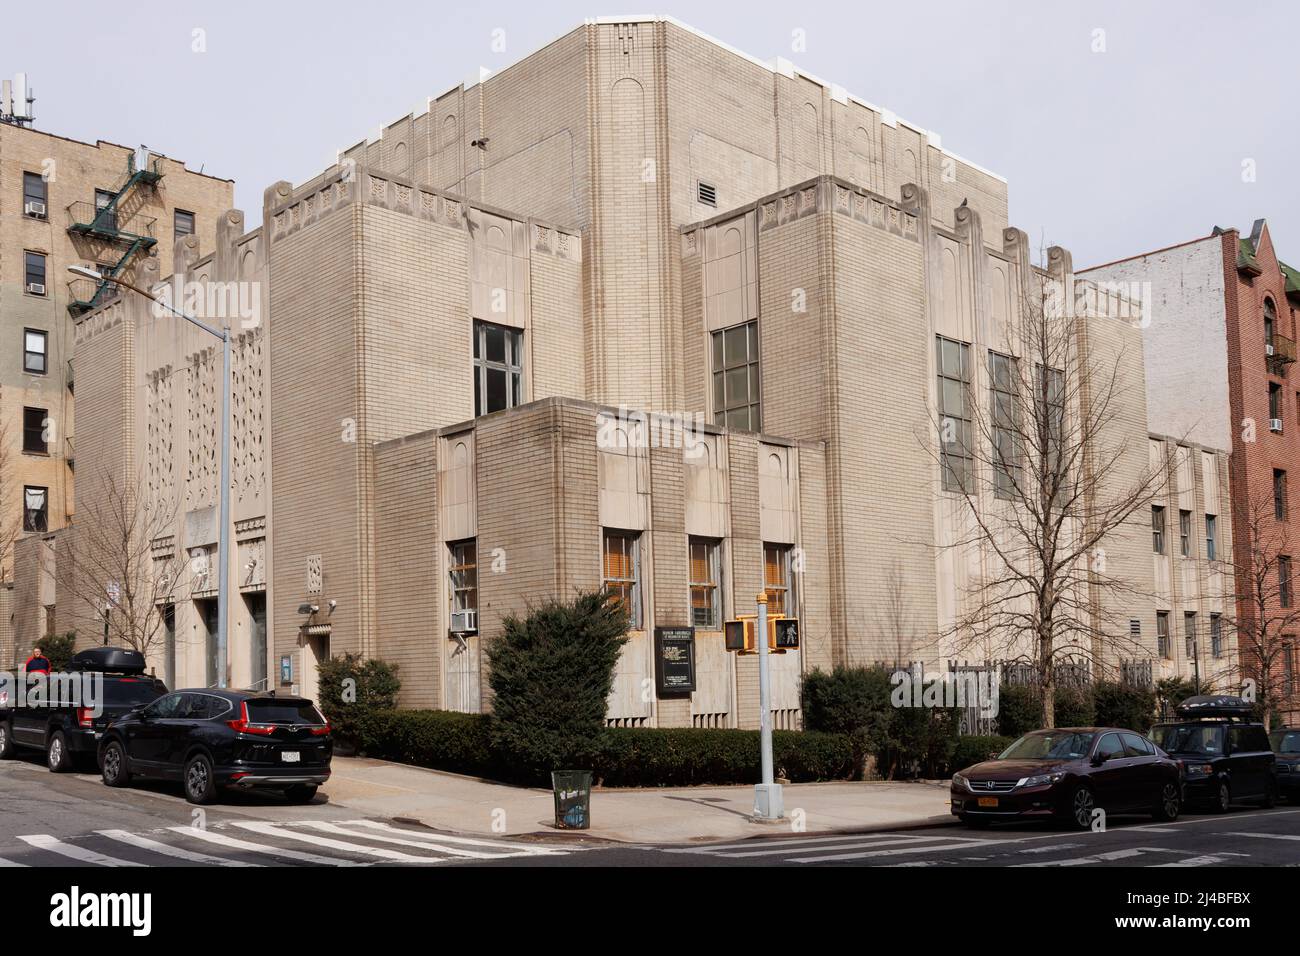 Das hebräische Tabernakel von Washington Heights, eine reformjüdische Gemeinde oder Synagoge in Northern Manhattan, New York, wurde 1905 gegründet Stockfoto